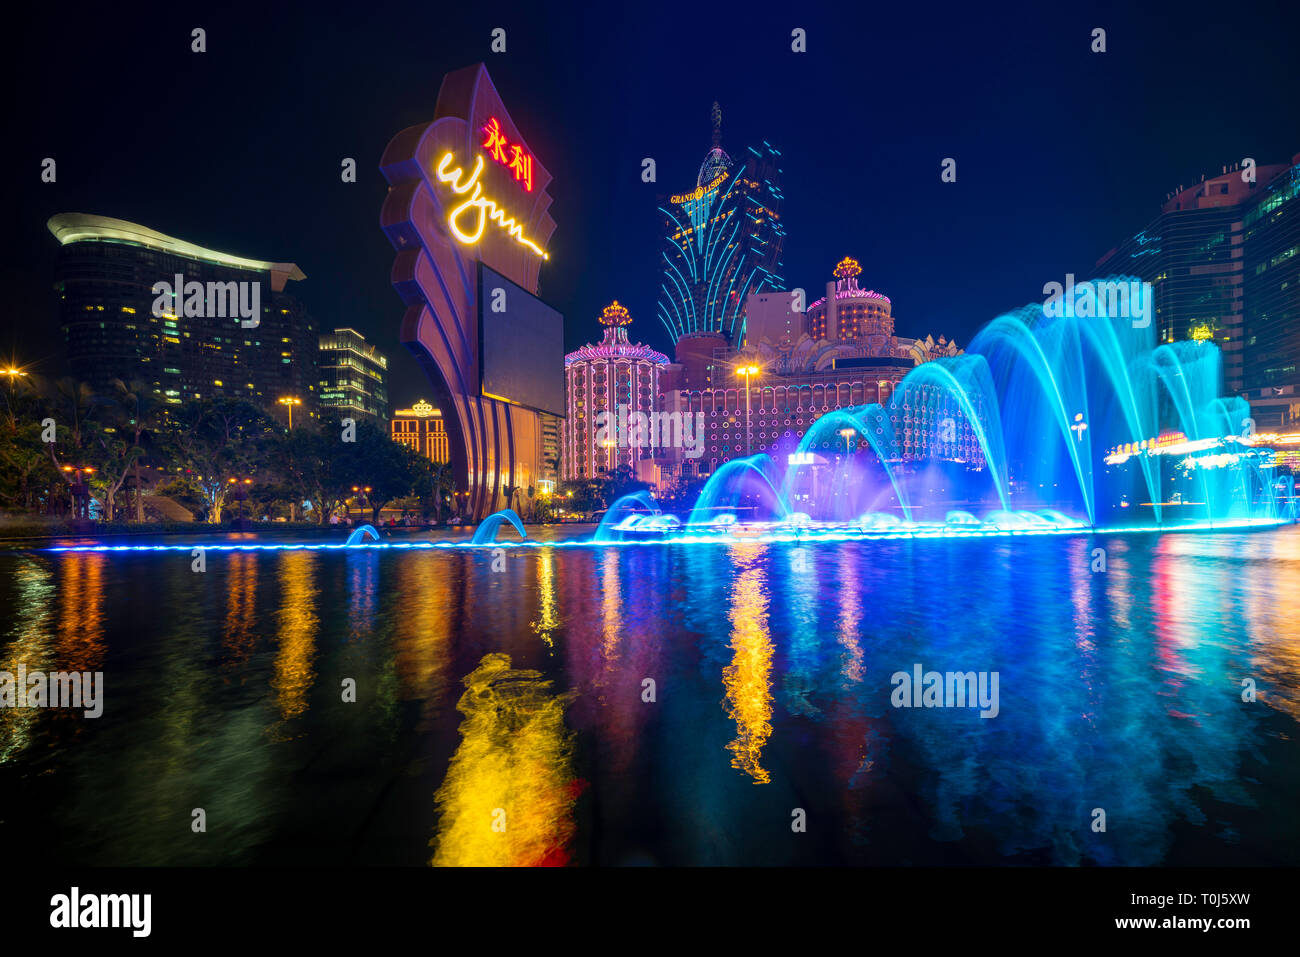 Très belle et très colorée avec beaucoup de néons lumineux. Photo de la fontaine danse spectacle au célèbre hôtel Wynn. Banque D'Images